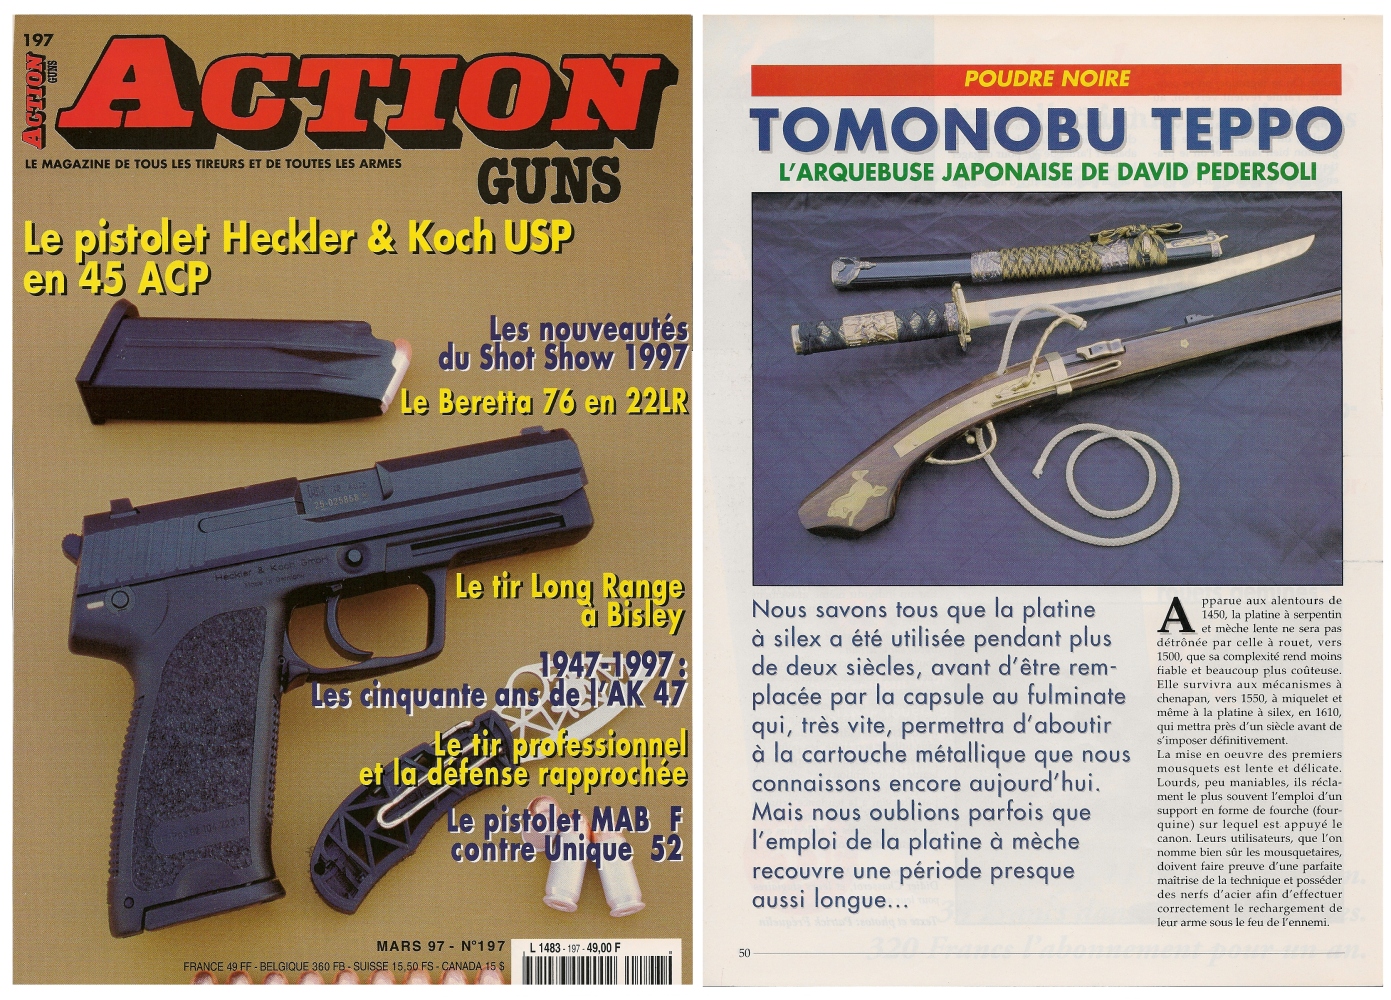 Le banc d’essai de la réplique d’arquebuse japonaise a été publié sur 6 pages dans le magazine Action Guns n°197 (mars 1997).